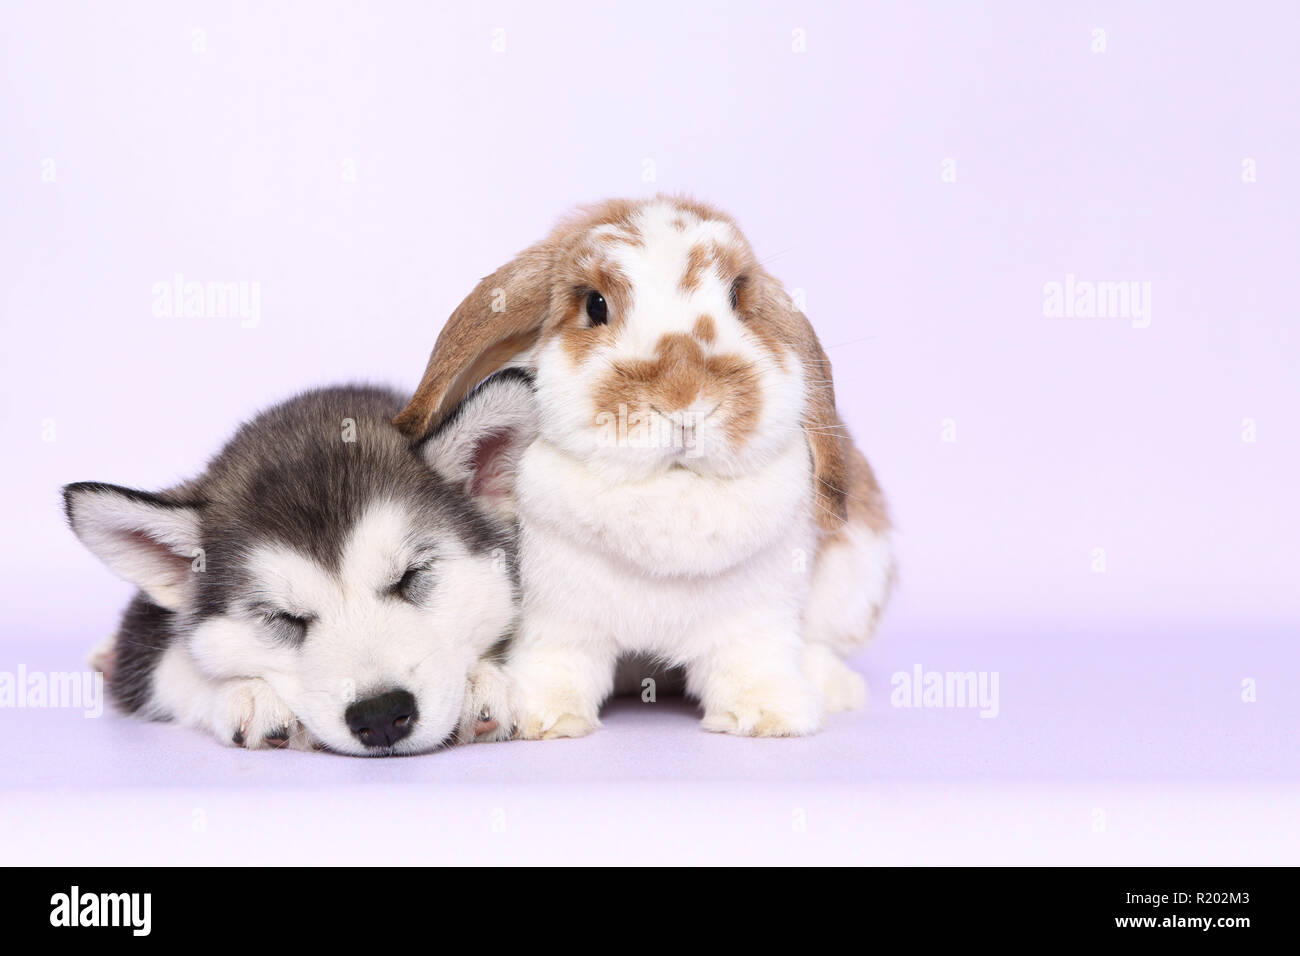 Alaskan Malamute. Sleeping cucciolo (6 settimane di età) e Mini Lop bunny accanto all'altra. Studio Immagine, visto contro un sfondo rosa. Germania Foto Stock